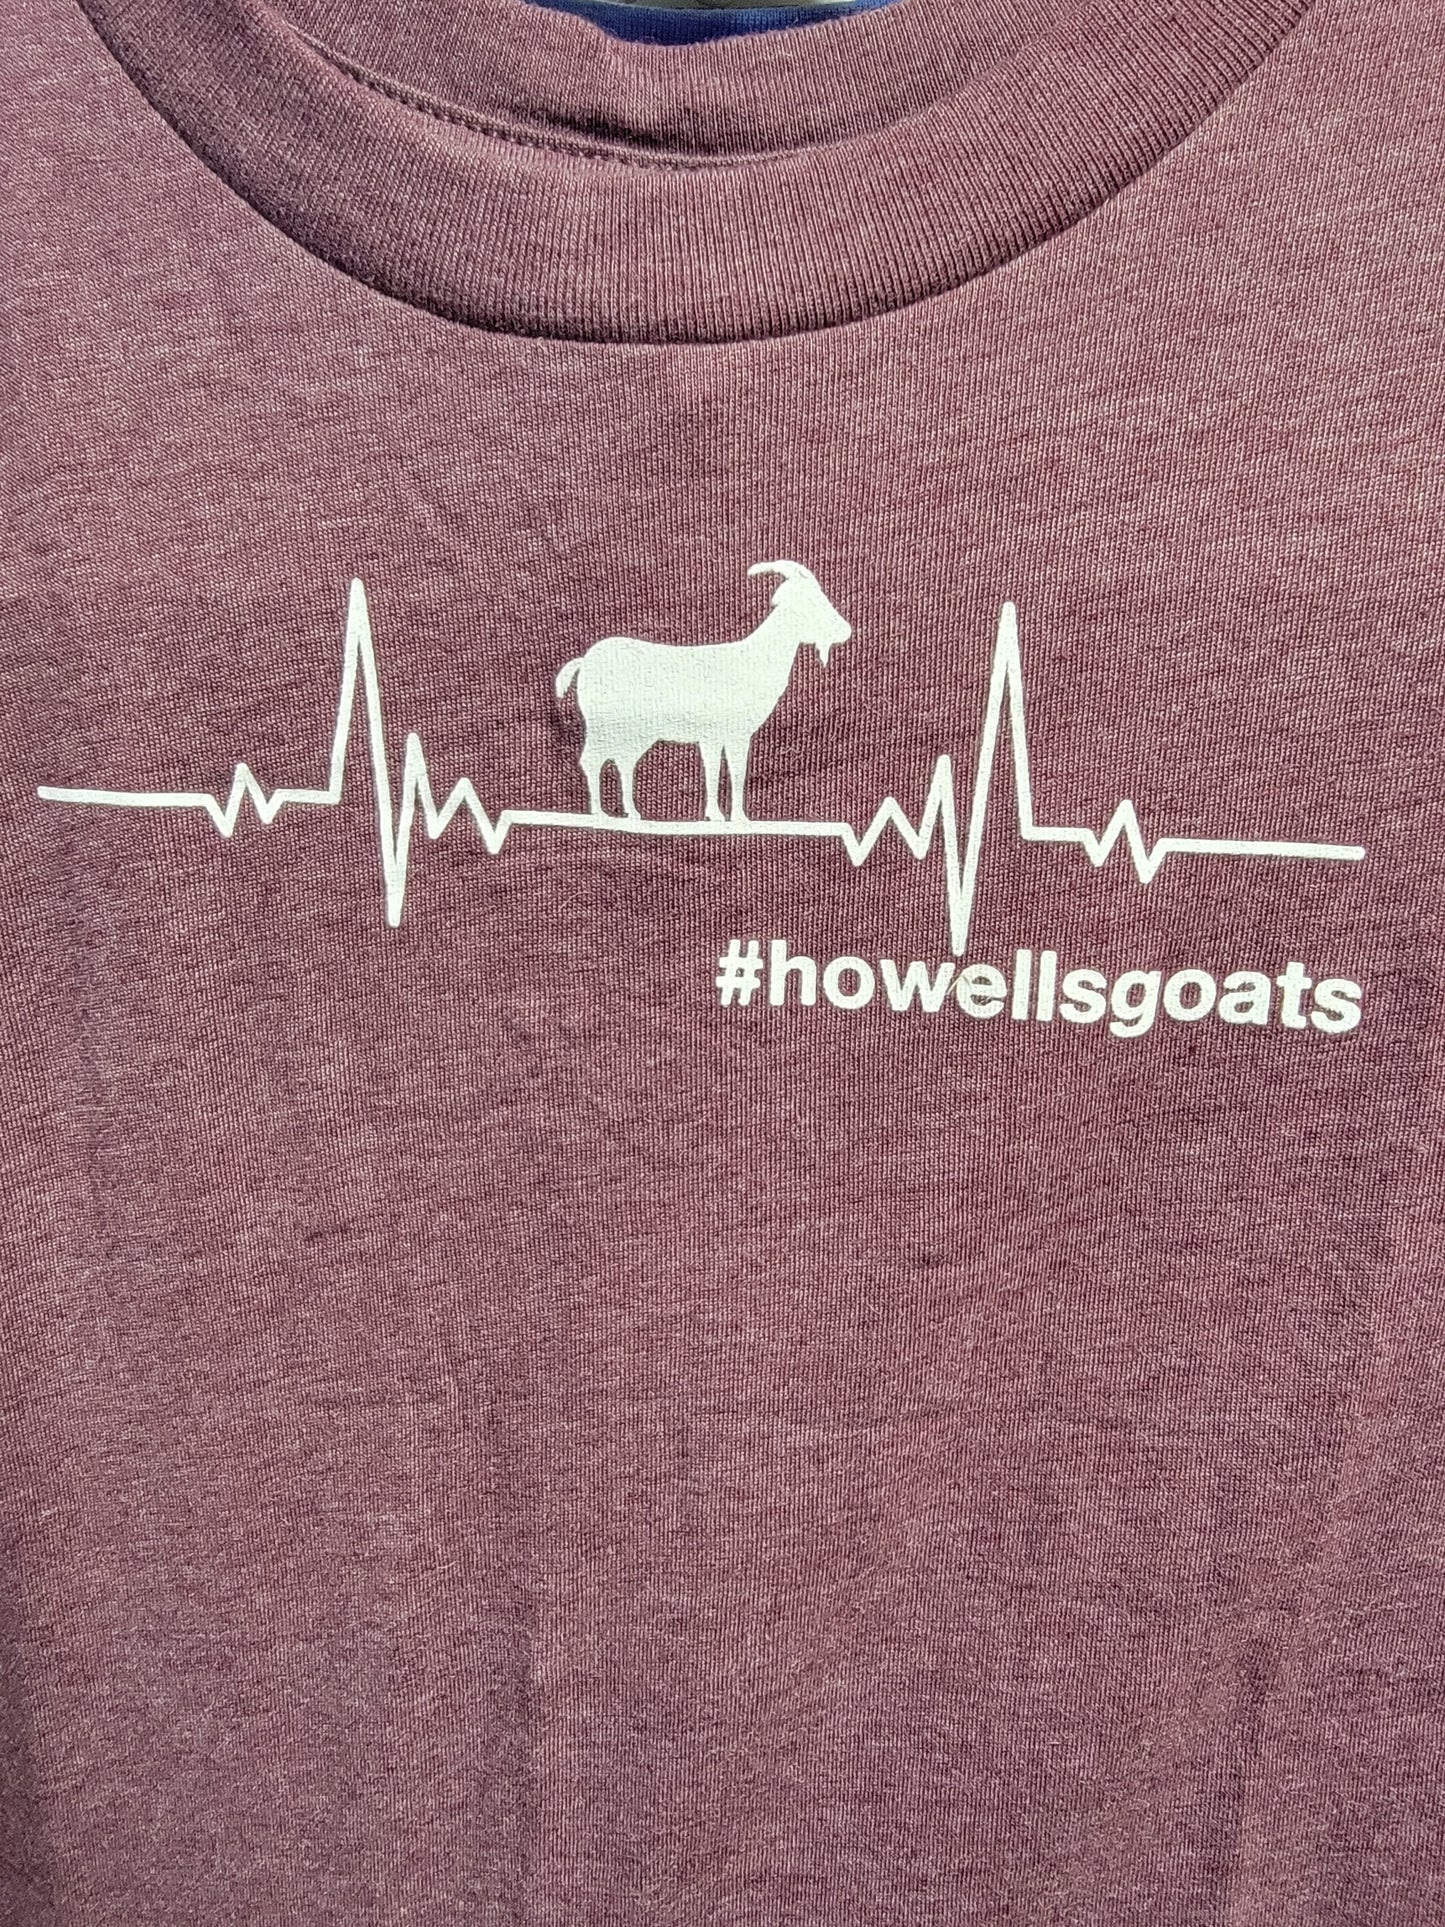 Howells Goat T-shirts